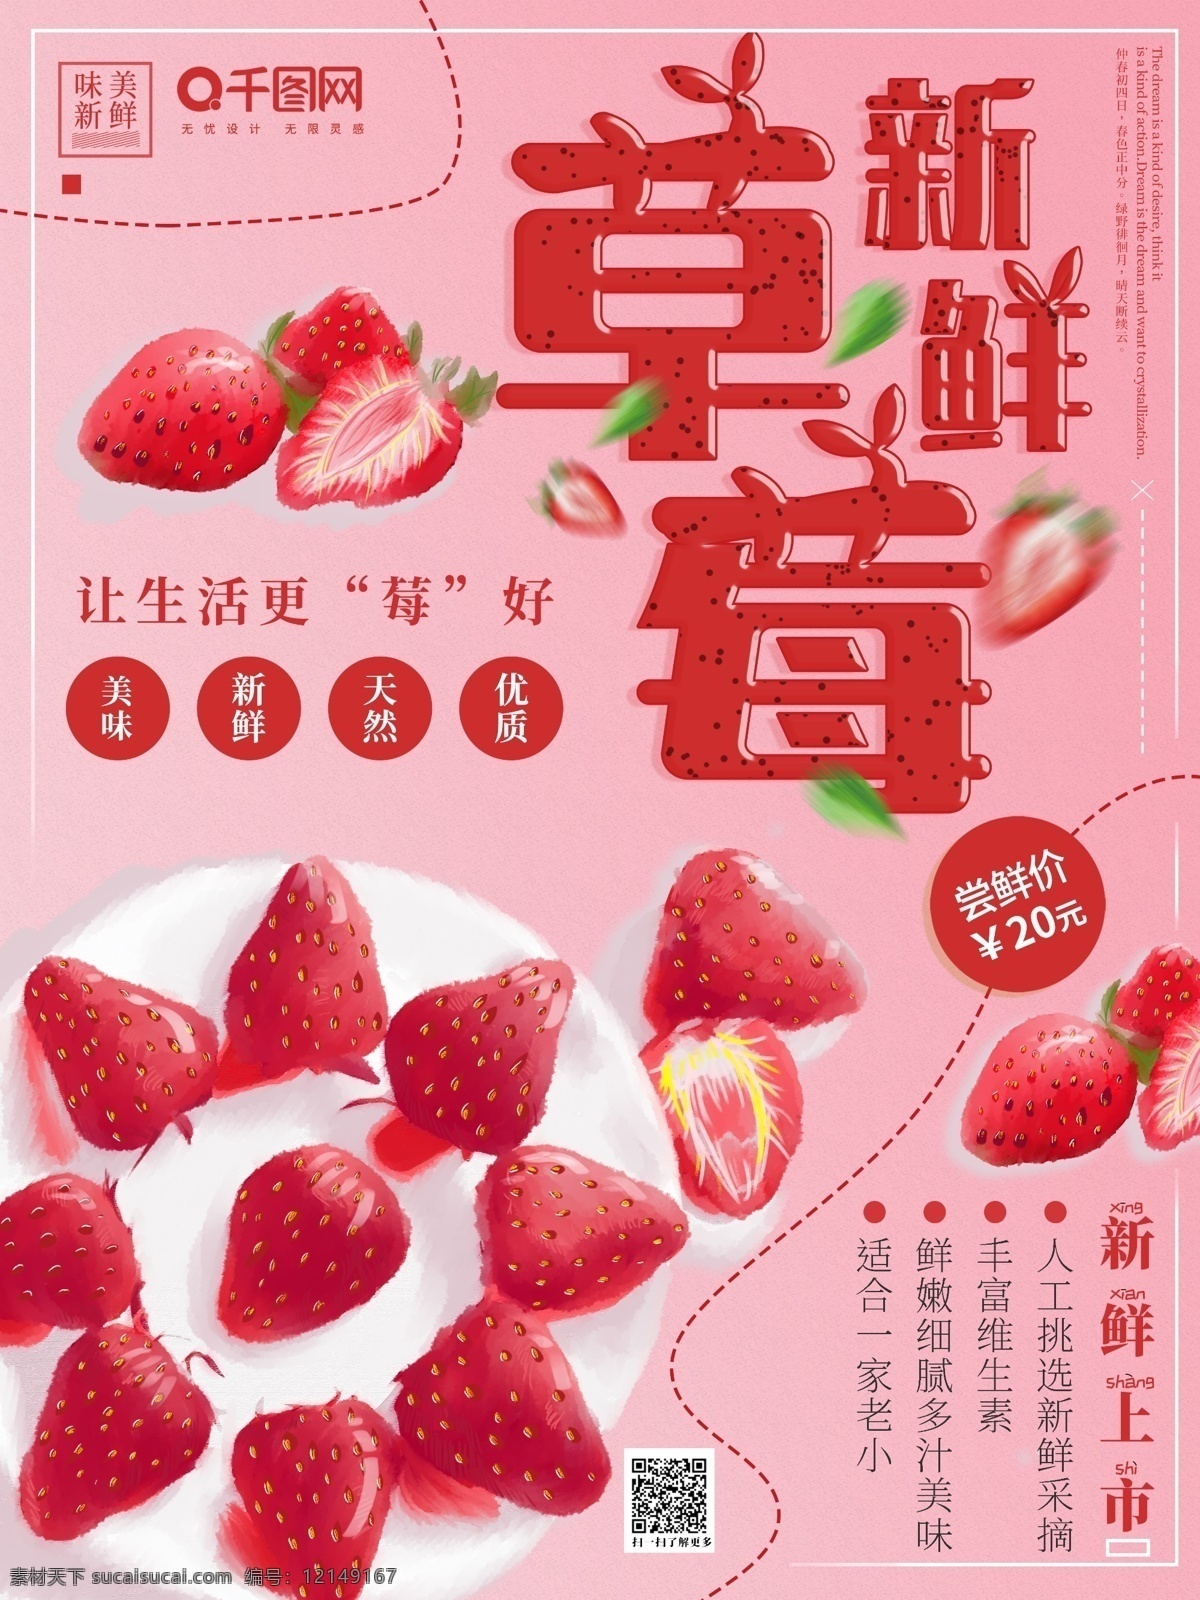 原创 手绘 新鲜 草莓 海报 水果 新鲜草莓 水果海报 粉色 简约